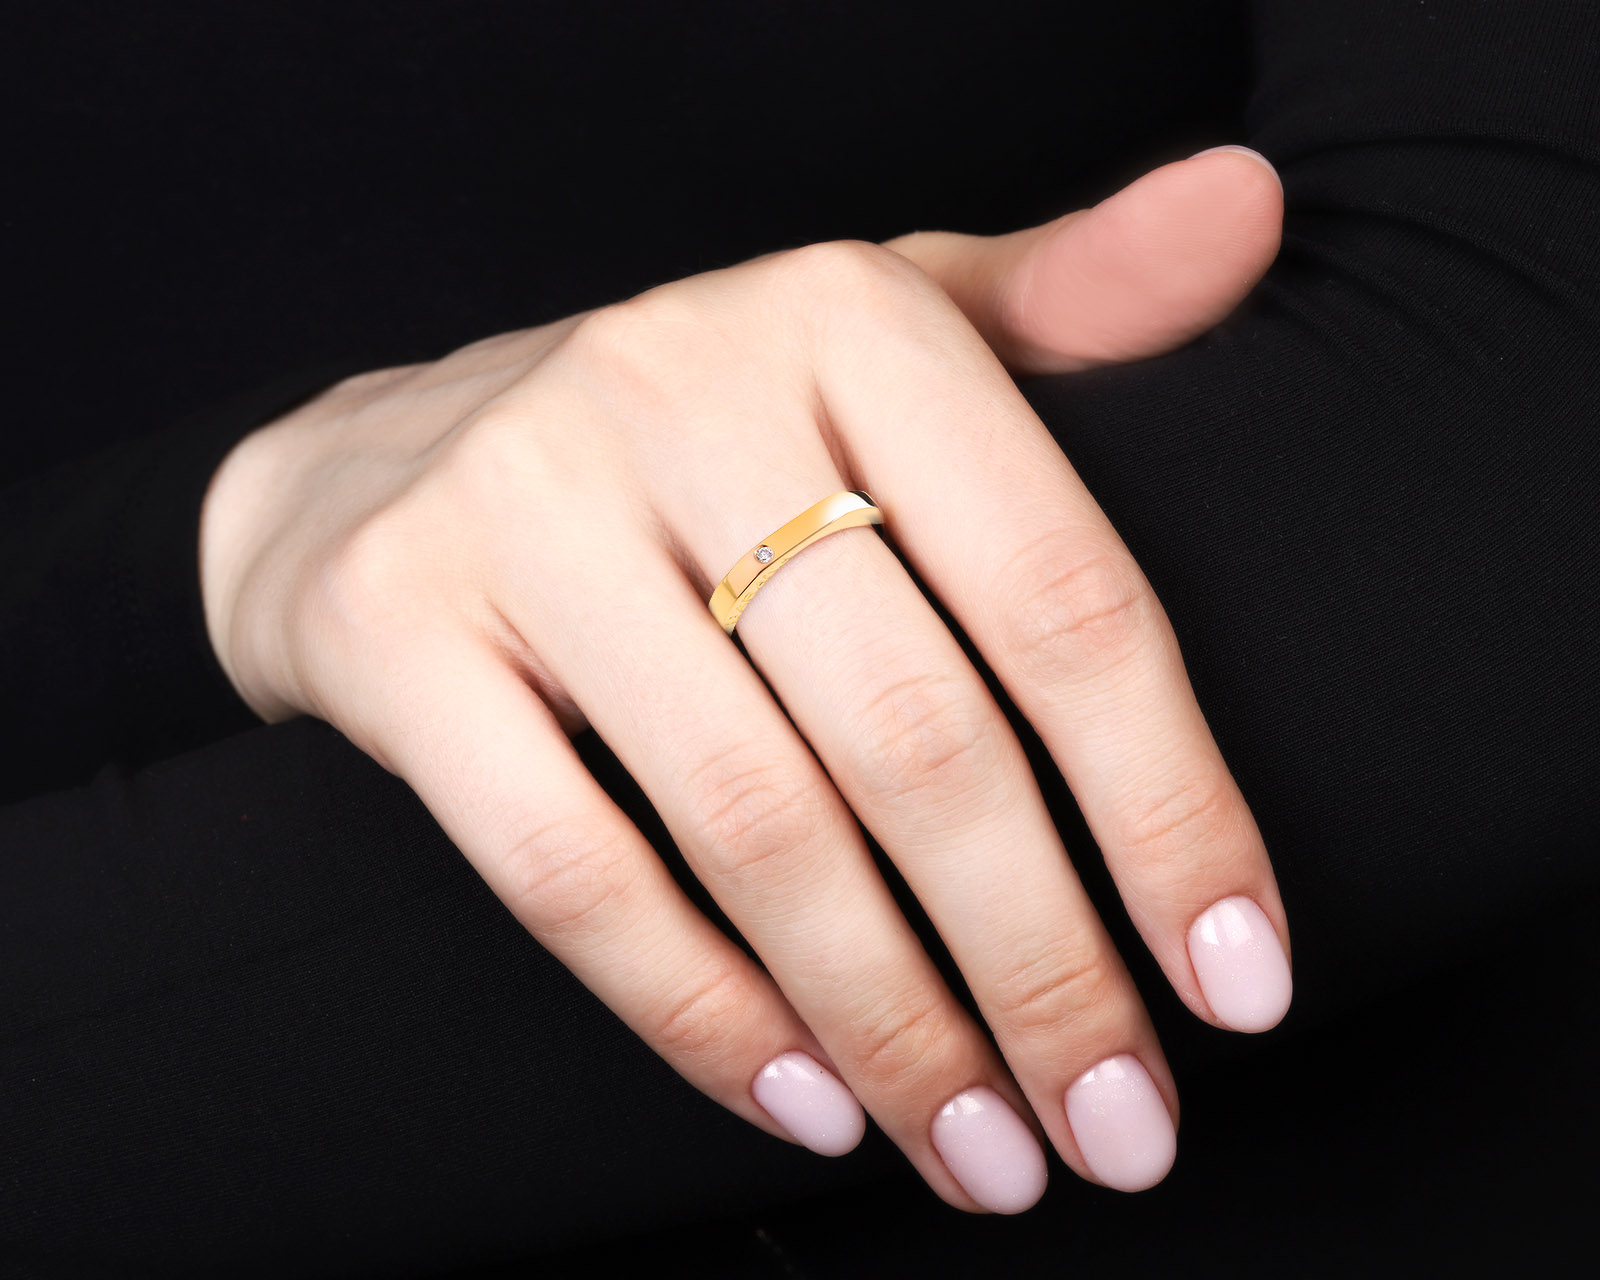 Оригинальное золотое кольцо с бриллиантом 0.01ct Baraka